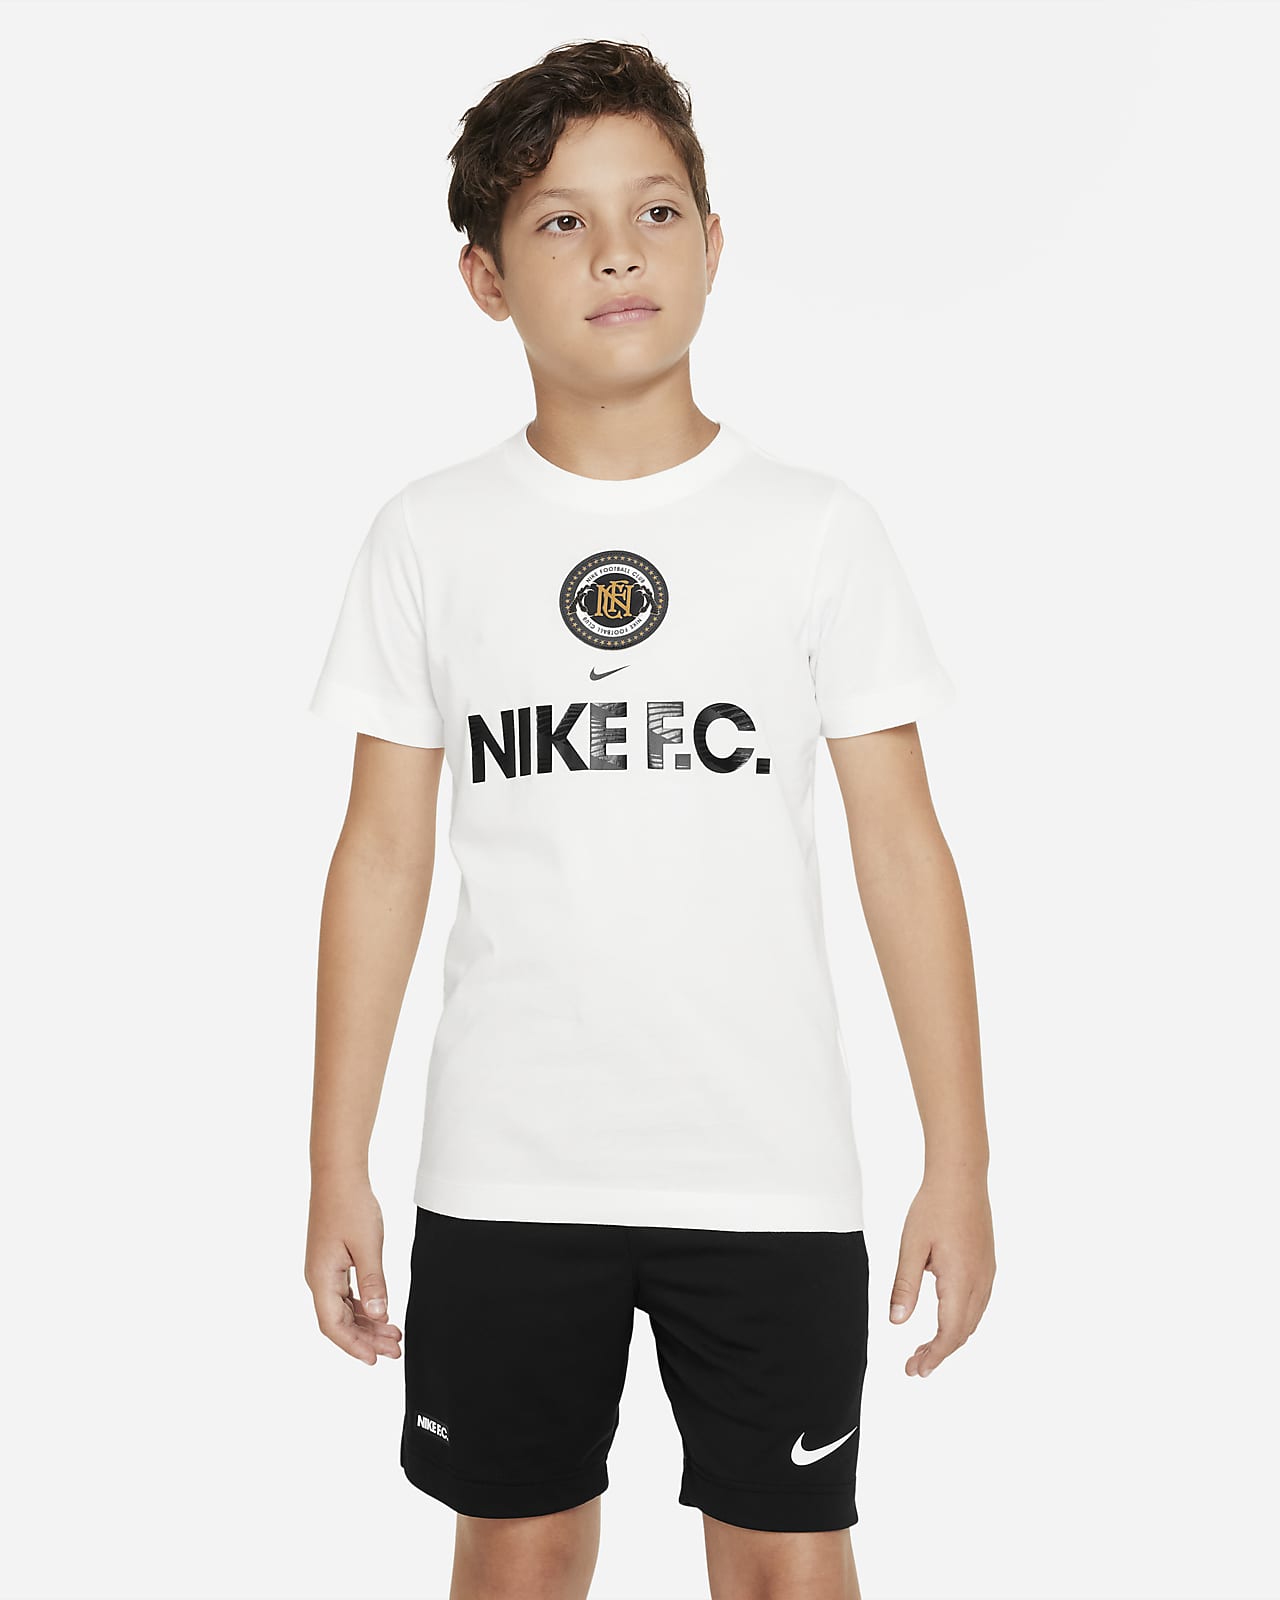 Gedrag Kritisch Collectief Nike Sportswear T-shirt voor jongens. Nike BE